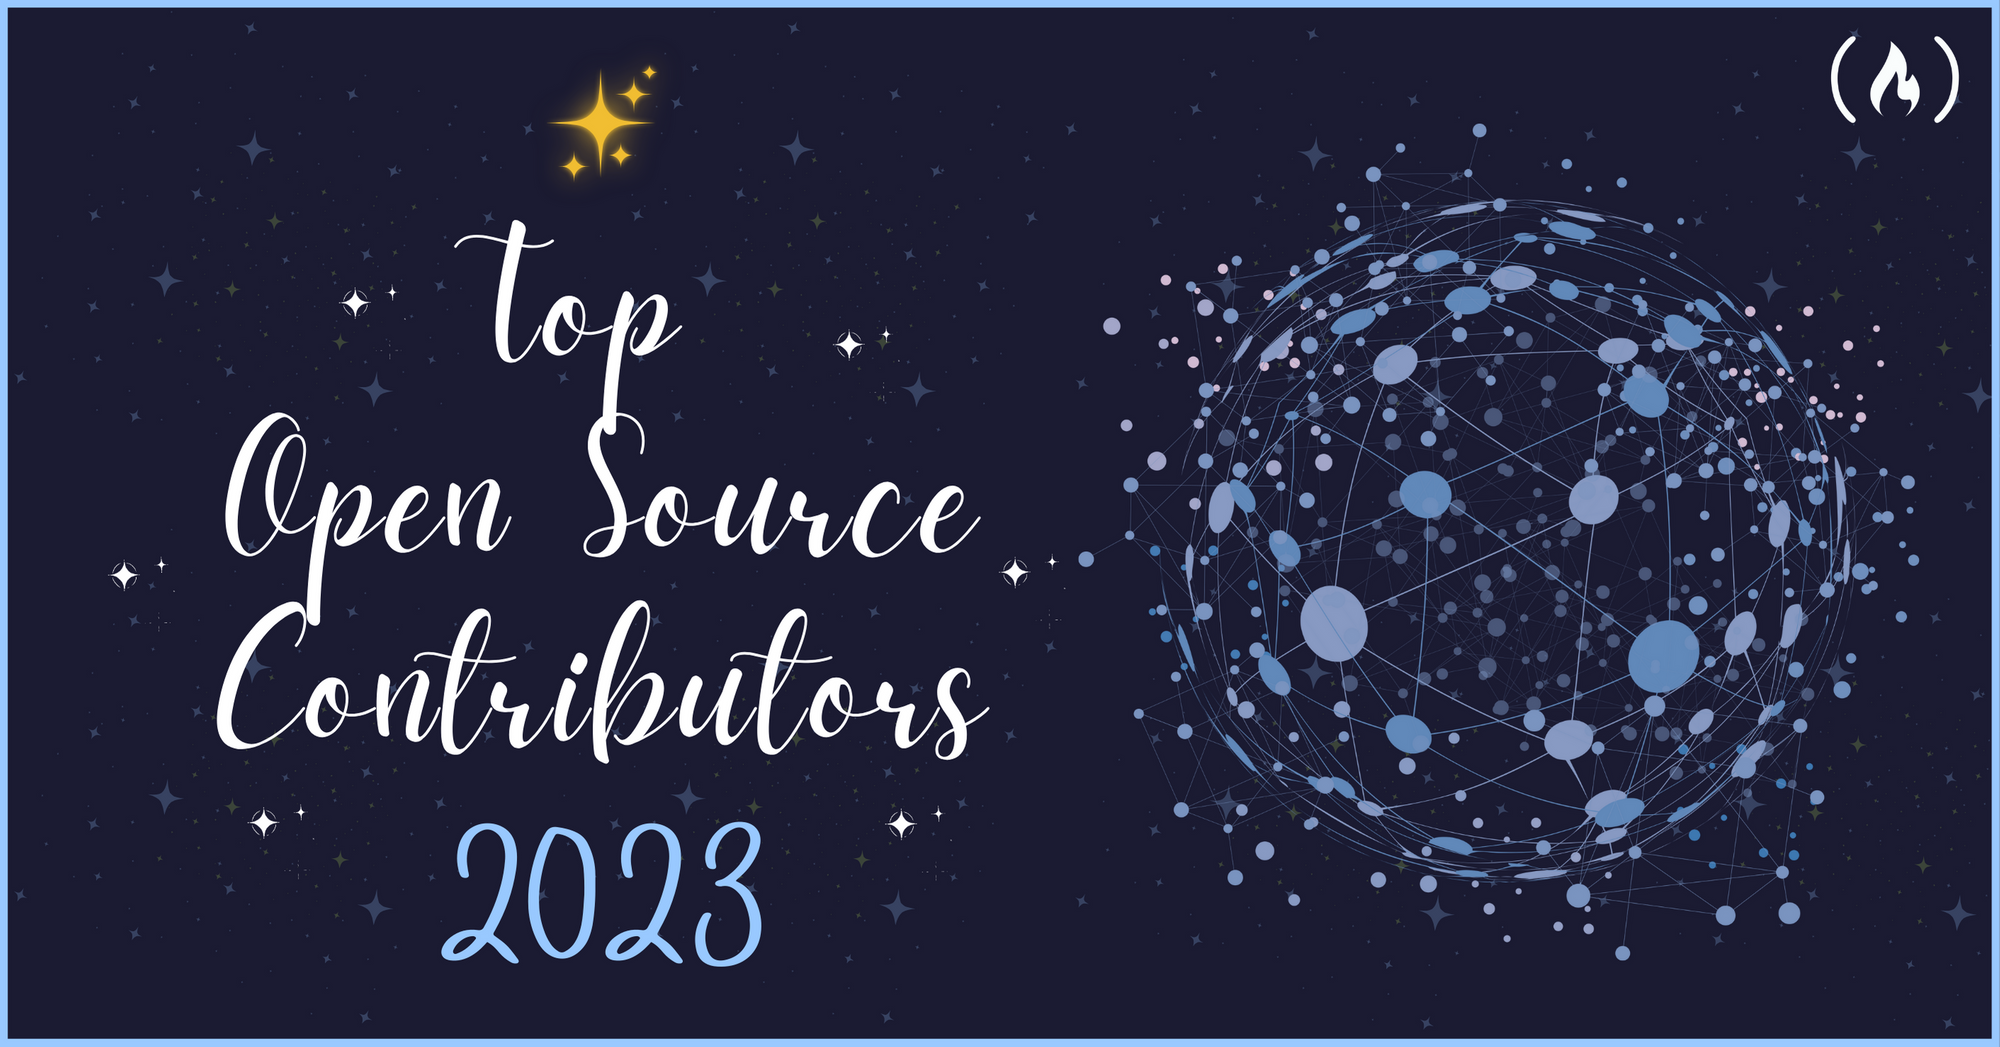 祝贺 freeCodeCamp 全球开源社区 2023 Top Contributors